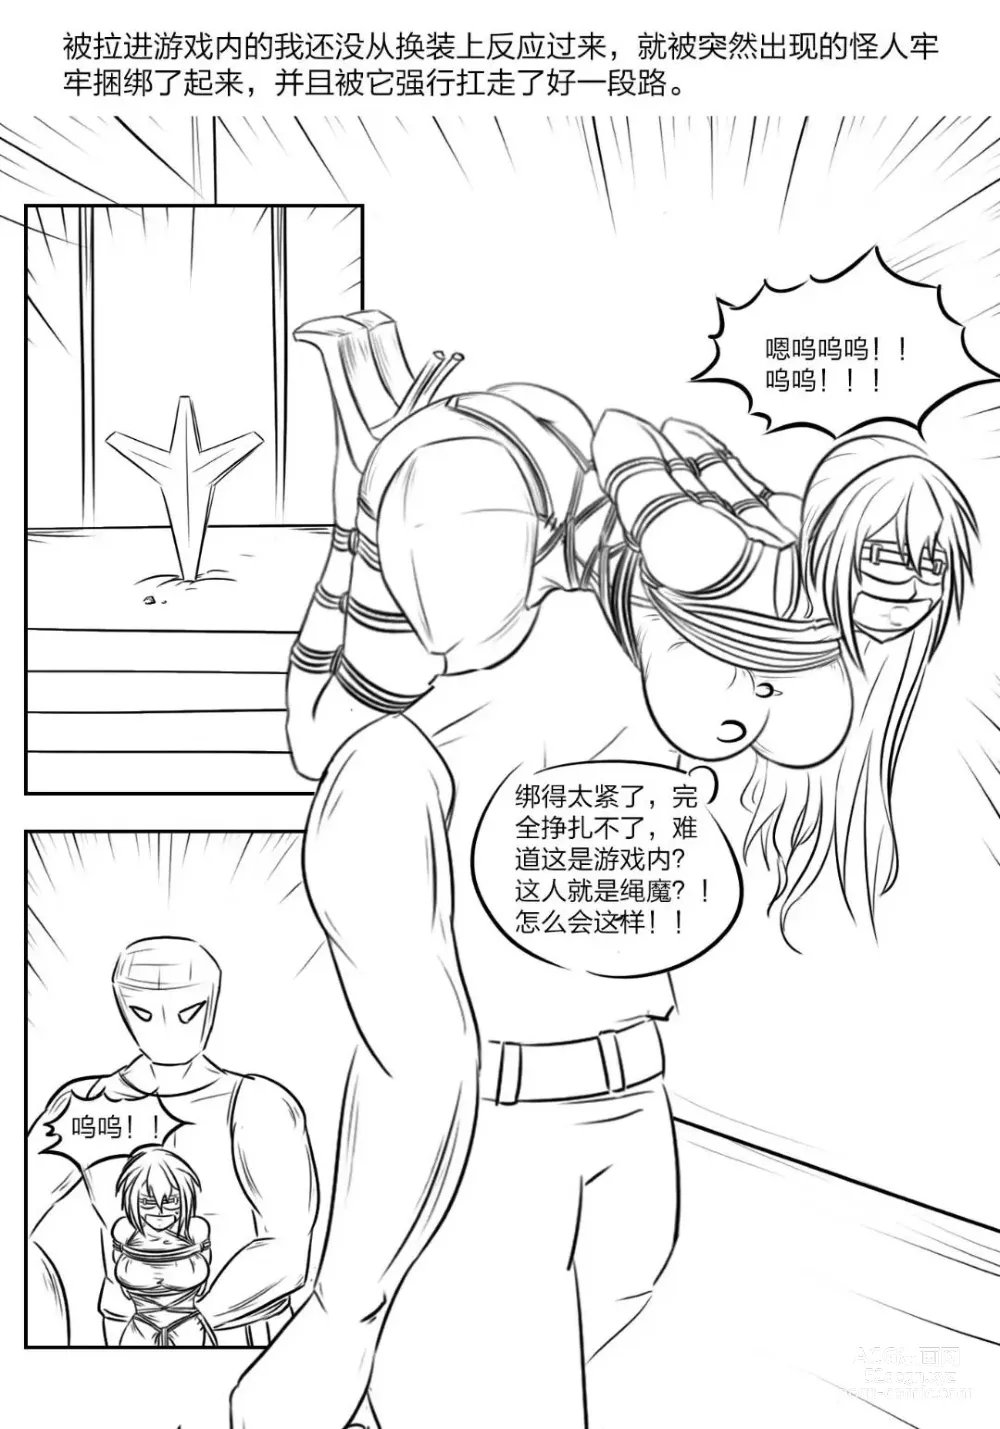 Page 6 of doujinshi 《被困游戏世界》